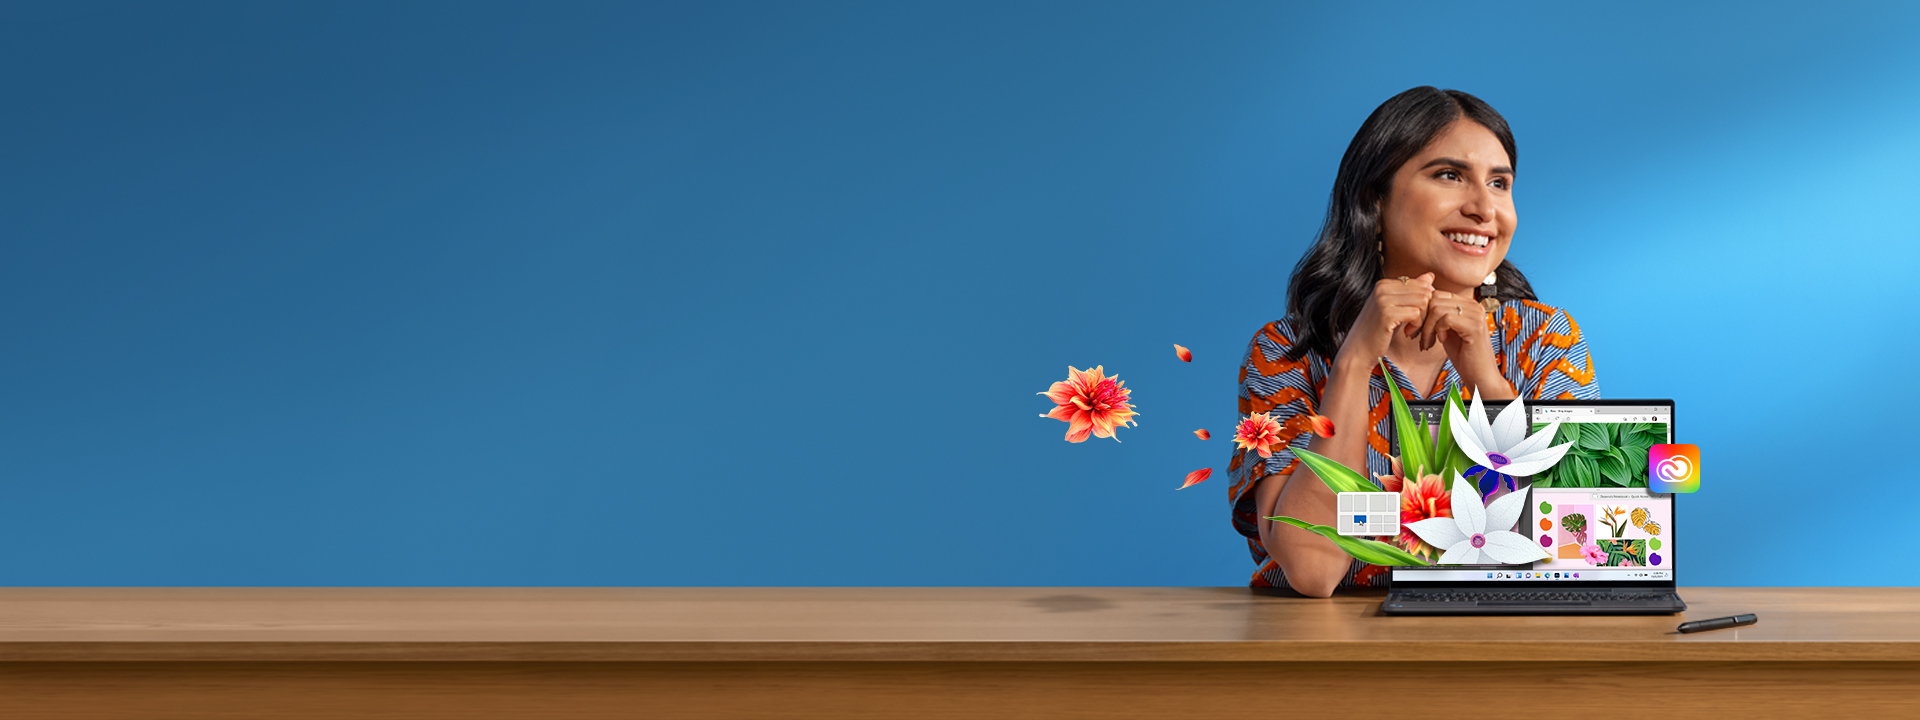 Une femme en robe rayée est assise à un bureau, un ordinateur portable devant elle. Des éléments digitaux tels que des grilles Snap et des illustrations florales Photoshop apparaissent comme par magie sur l’écran.